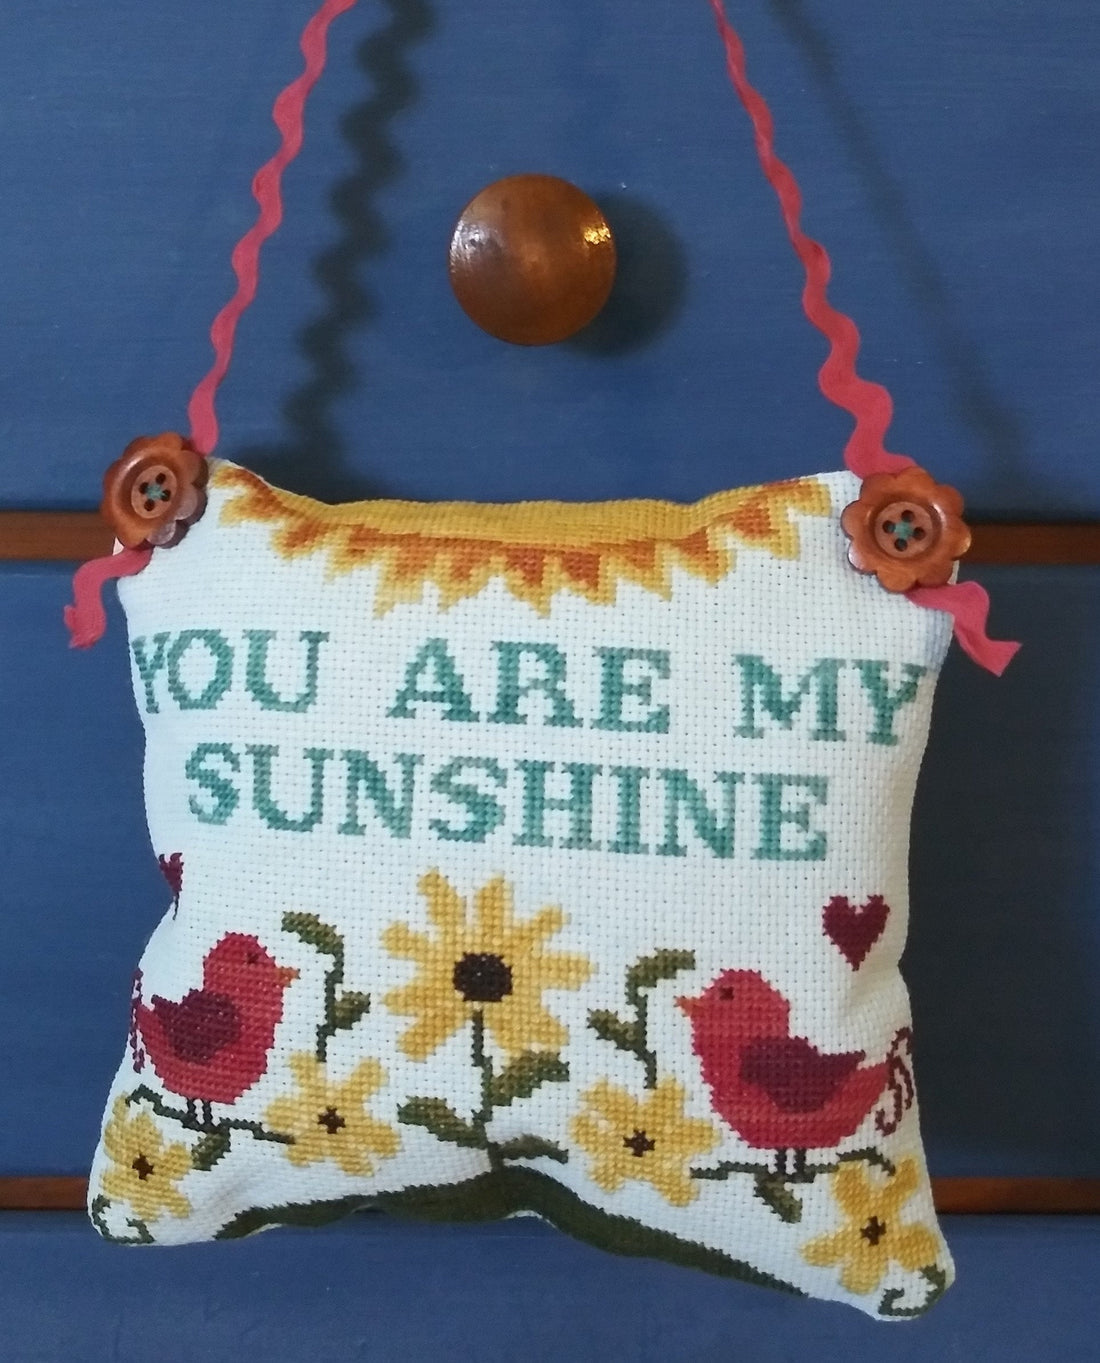 You Are My Sunshine - Cross Stitch Pattern